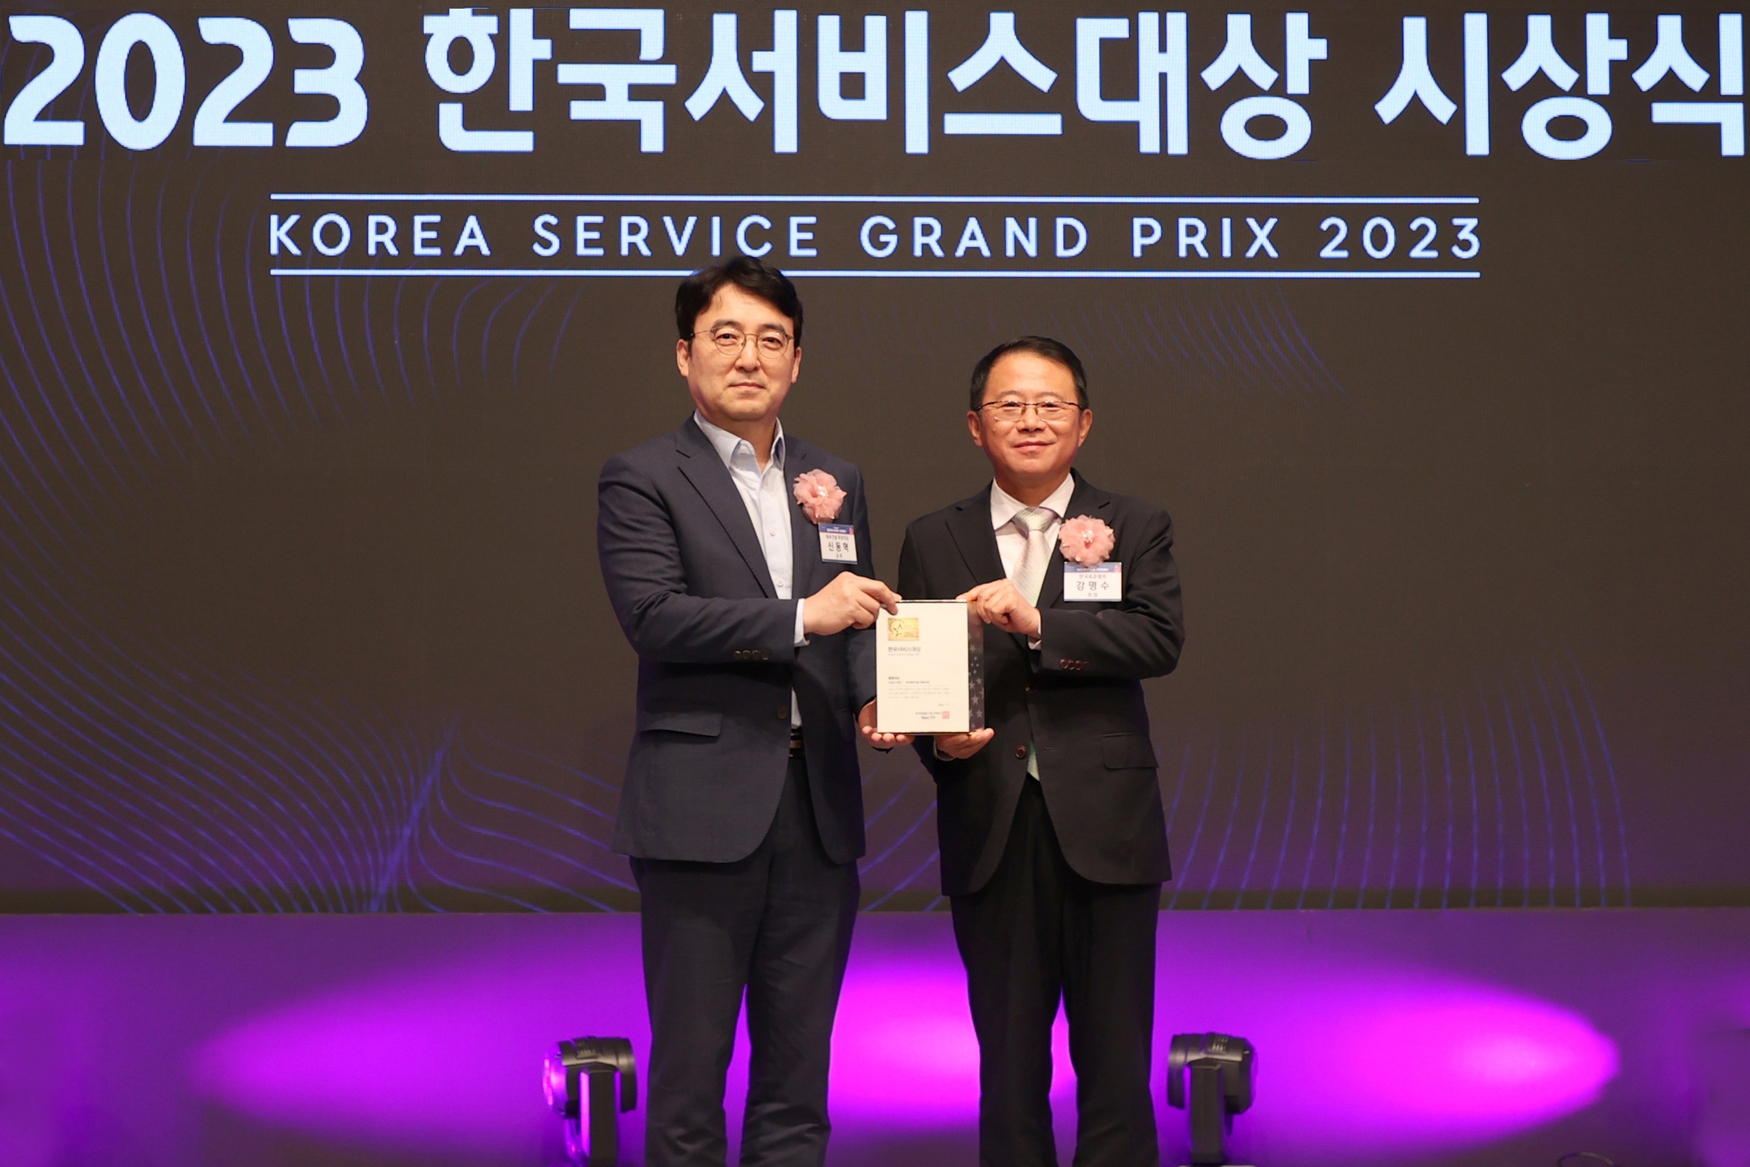 대우건설 신동혁 상무(왼쪽)가 강명수 한국표준협회 회장으로부터 ‘종합대상’을 수상하고 있다. / 사진제공=대우건설